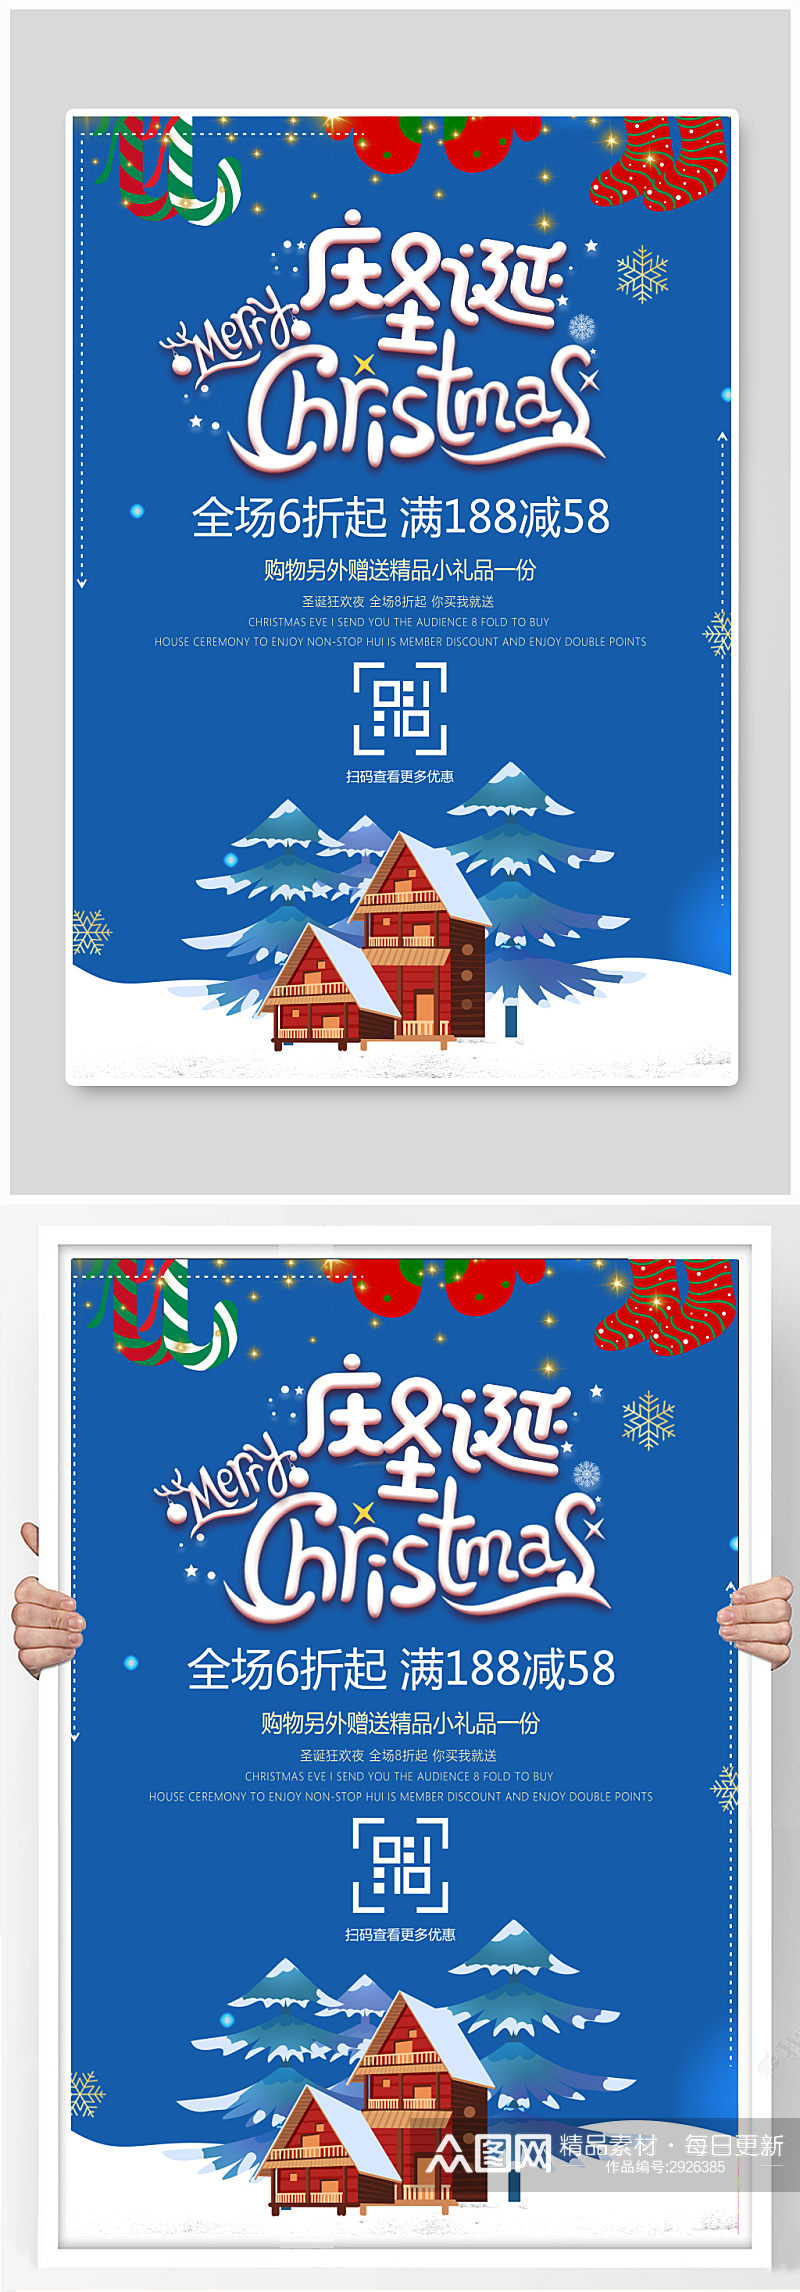 蓝色卡通圣诞节宣传促销活动海报素材